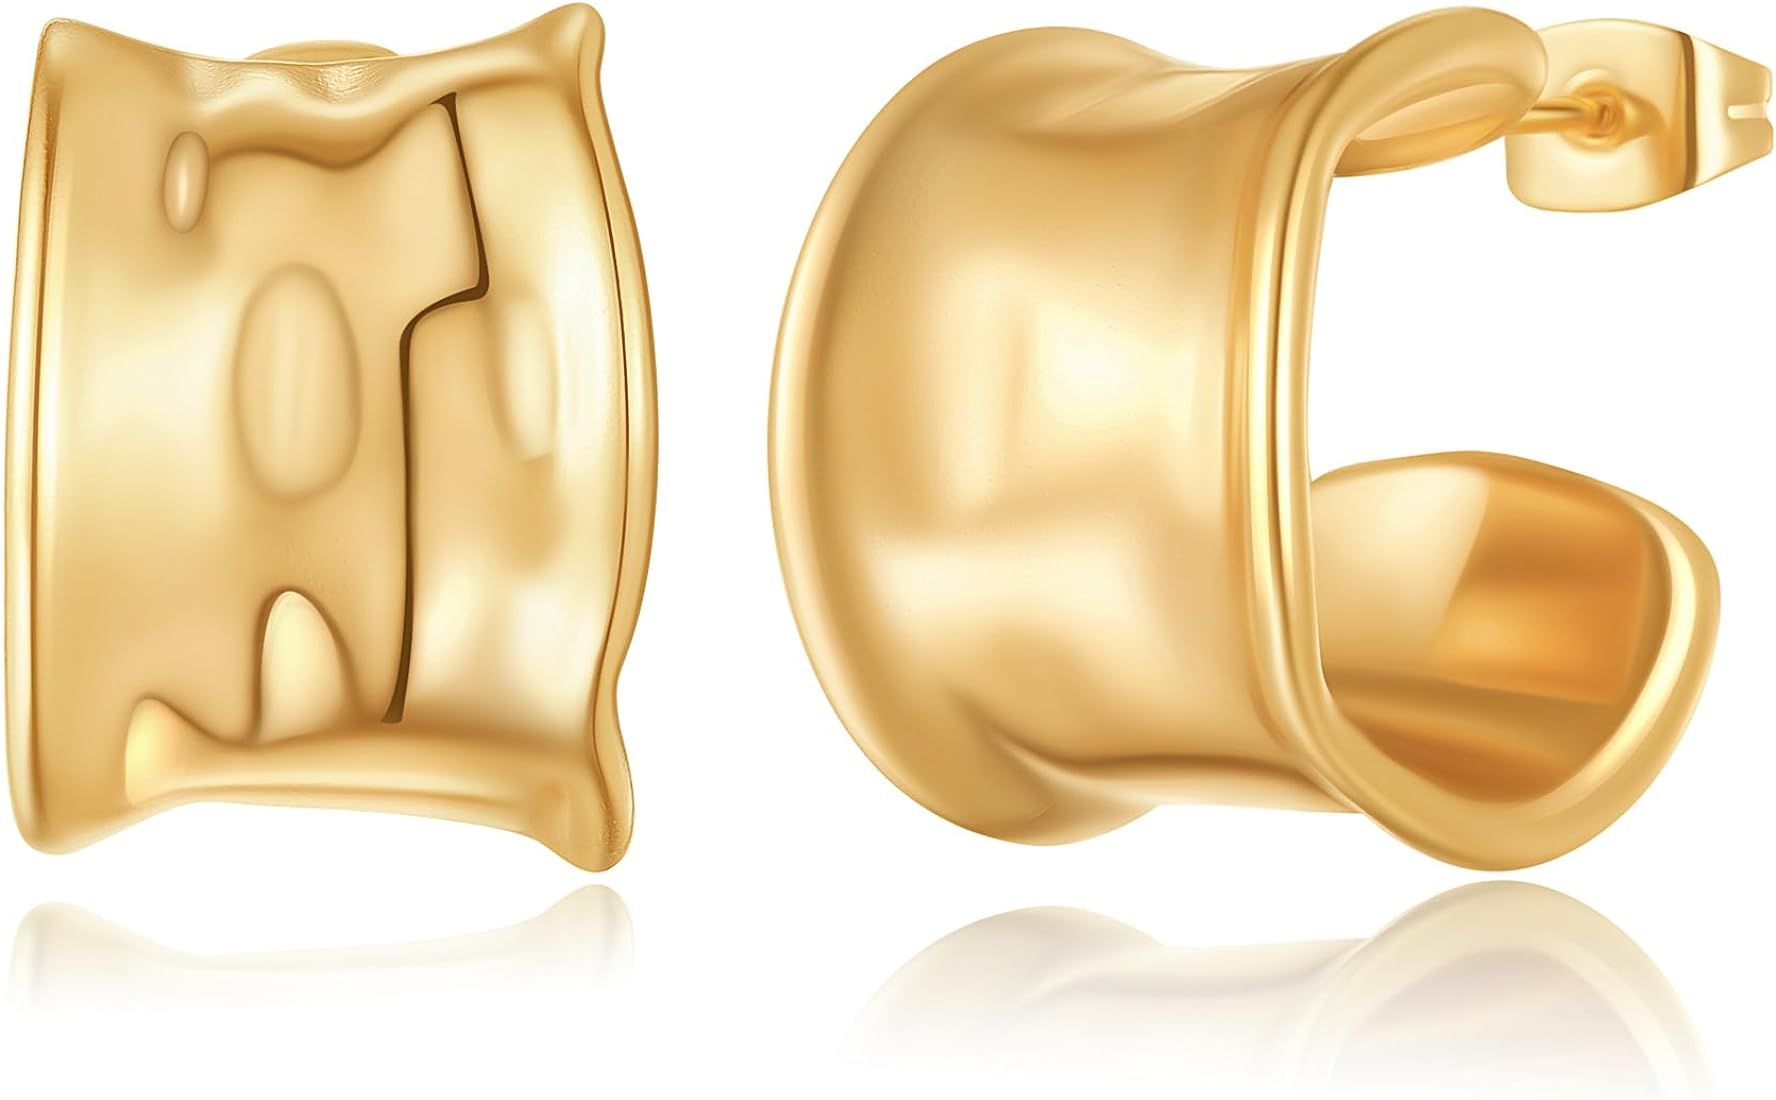 Gold Earrings for Women Girls,14K Gold Plated Lightweight Gold Hoop Earrings Hypoallergenic Earri... | Amazon (US)